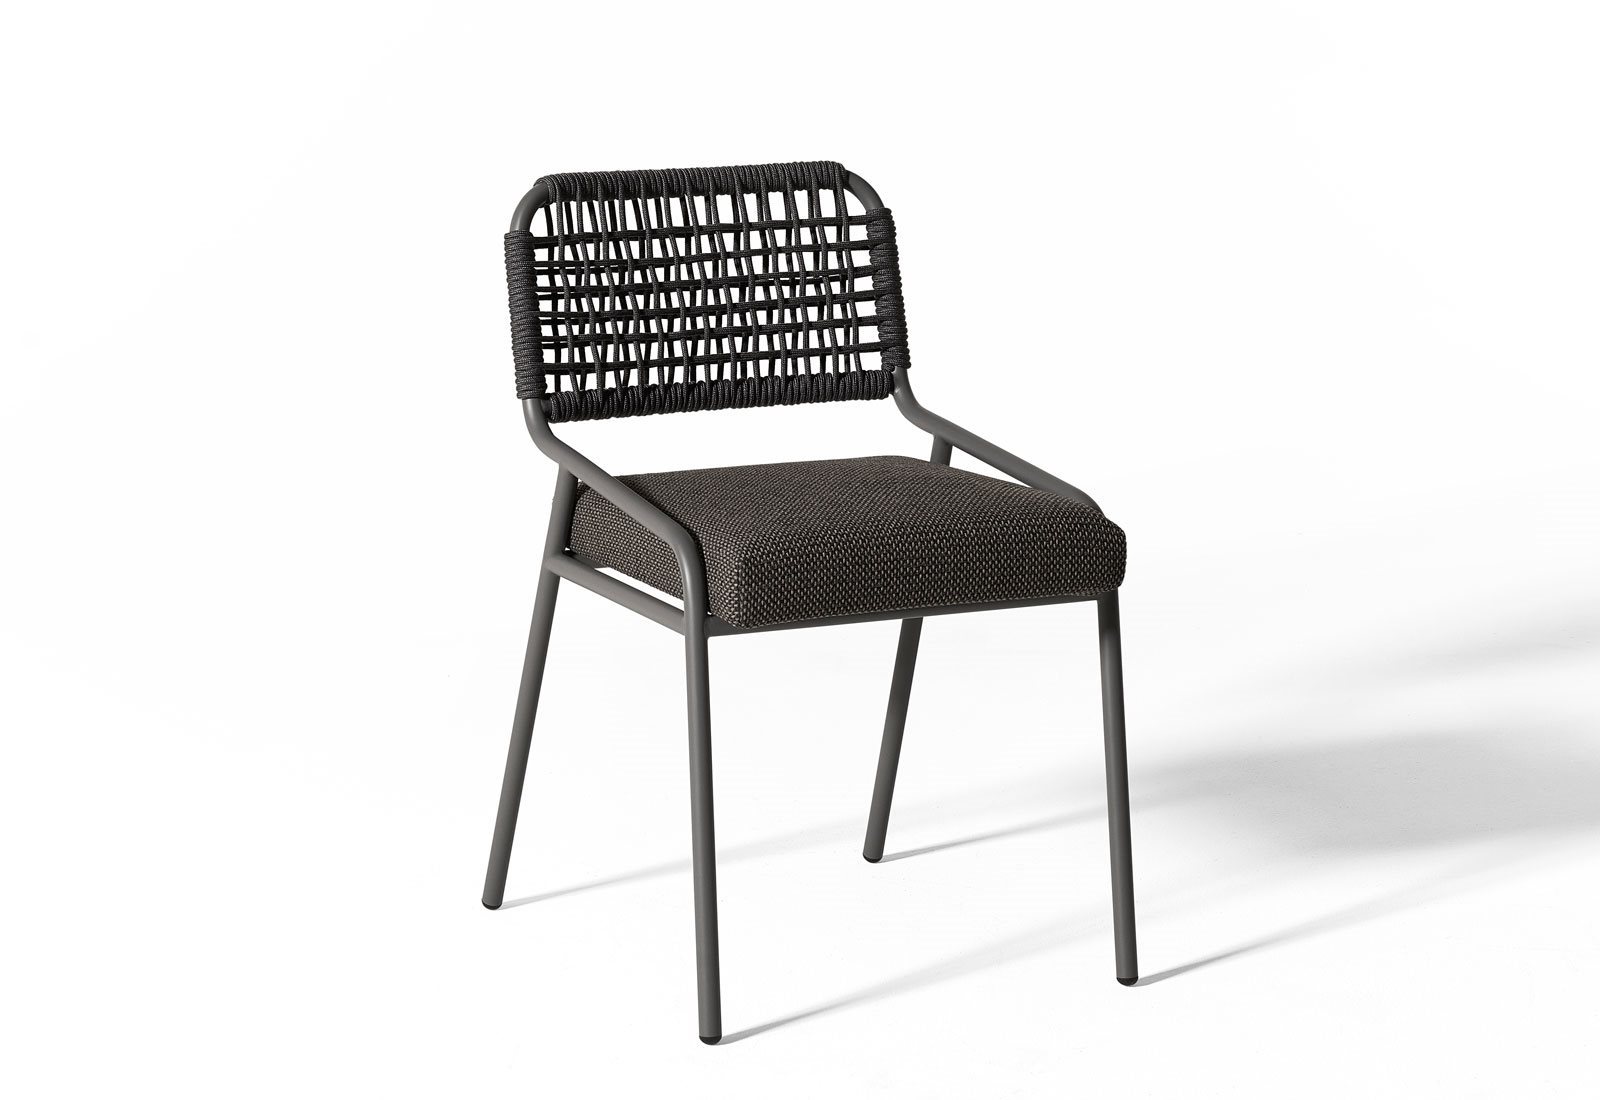 Tai-open-air-chair-02-1600x1100